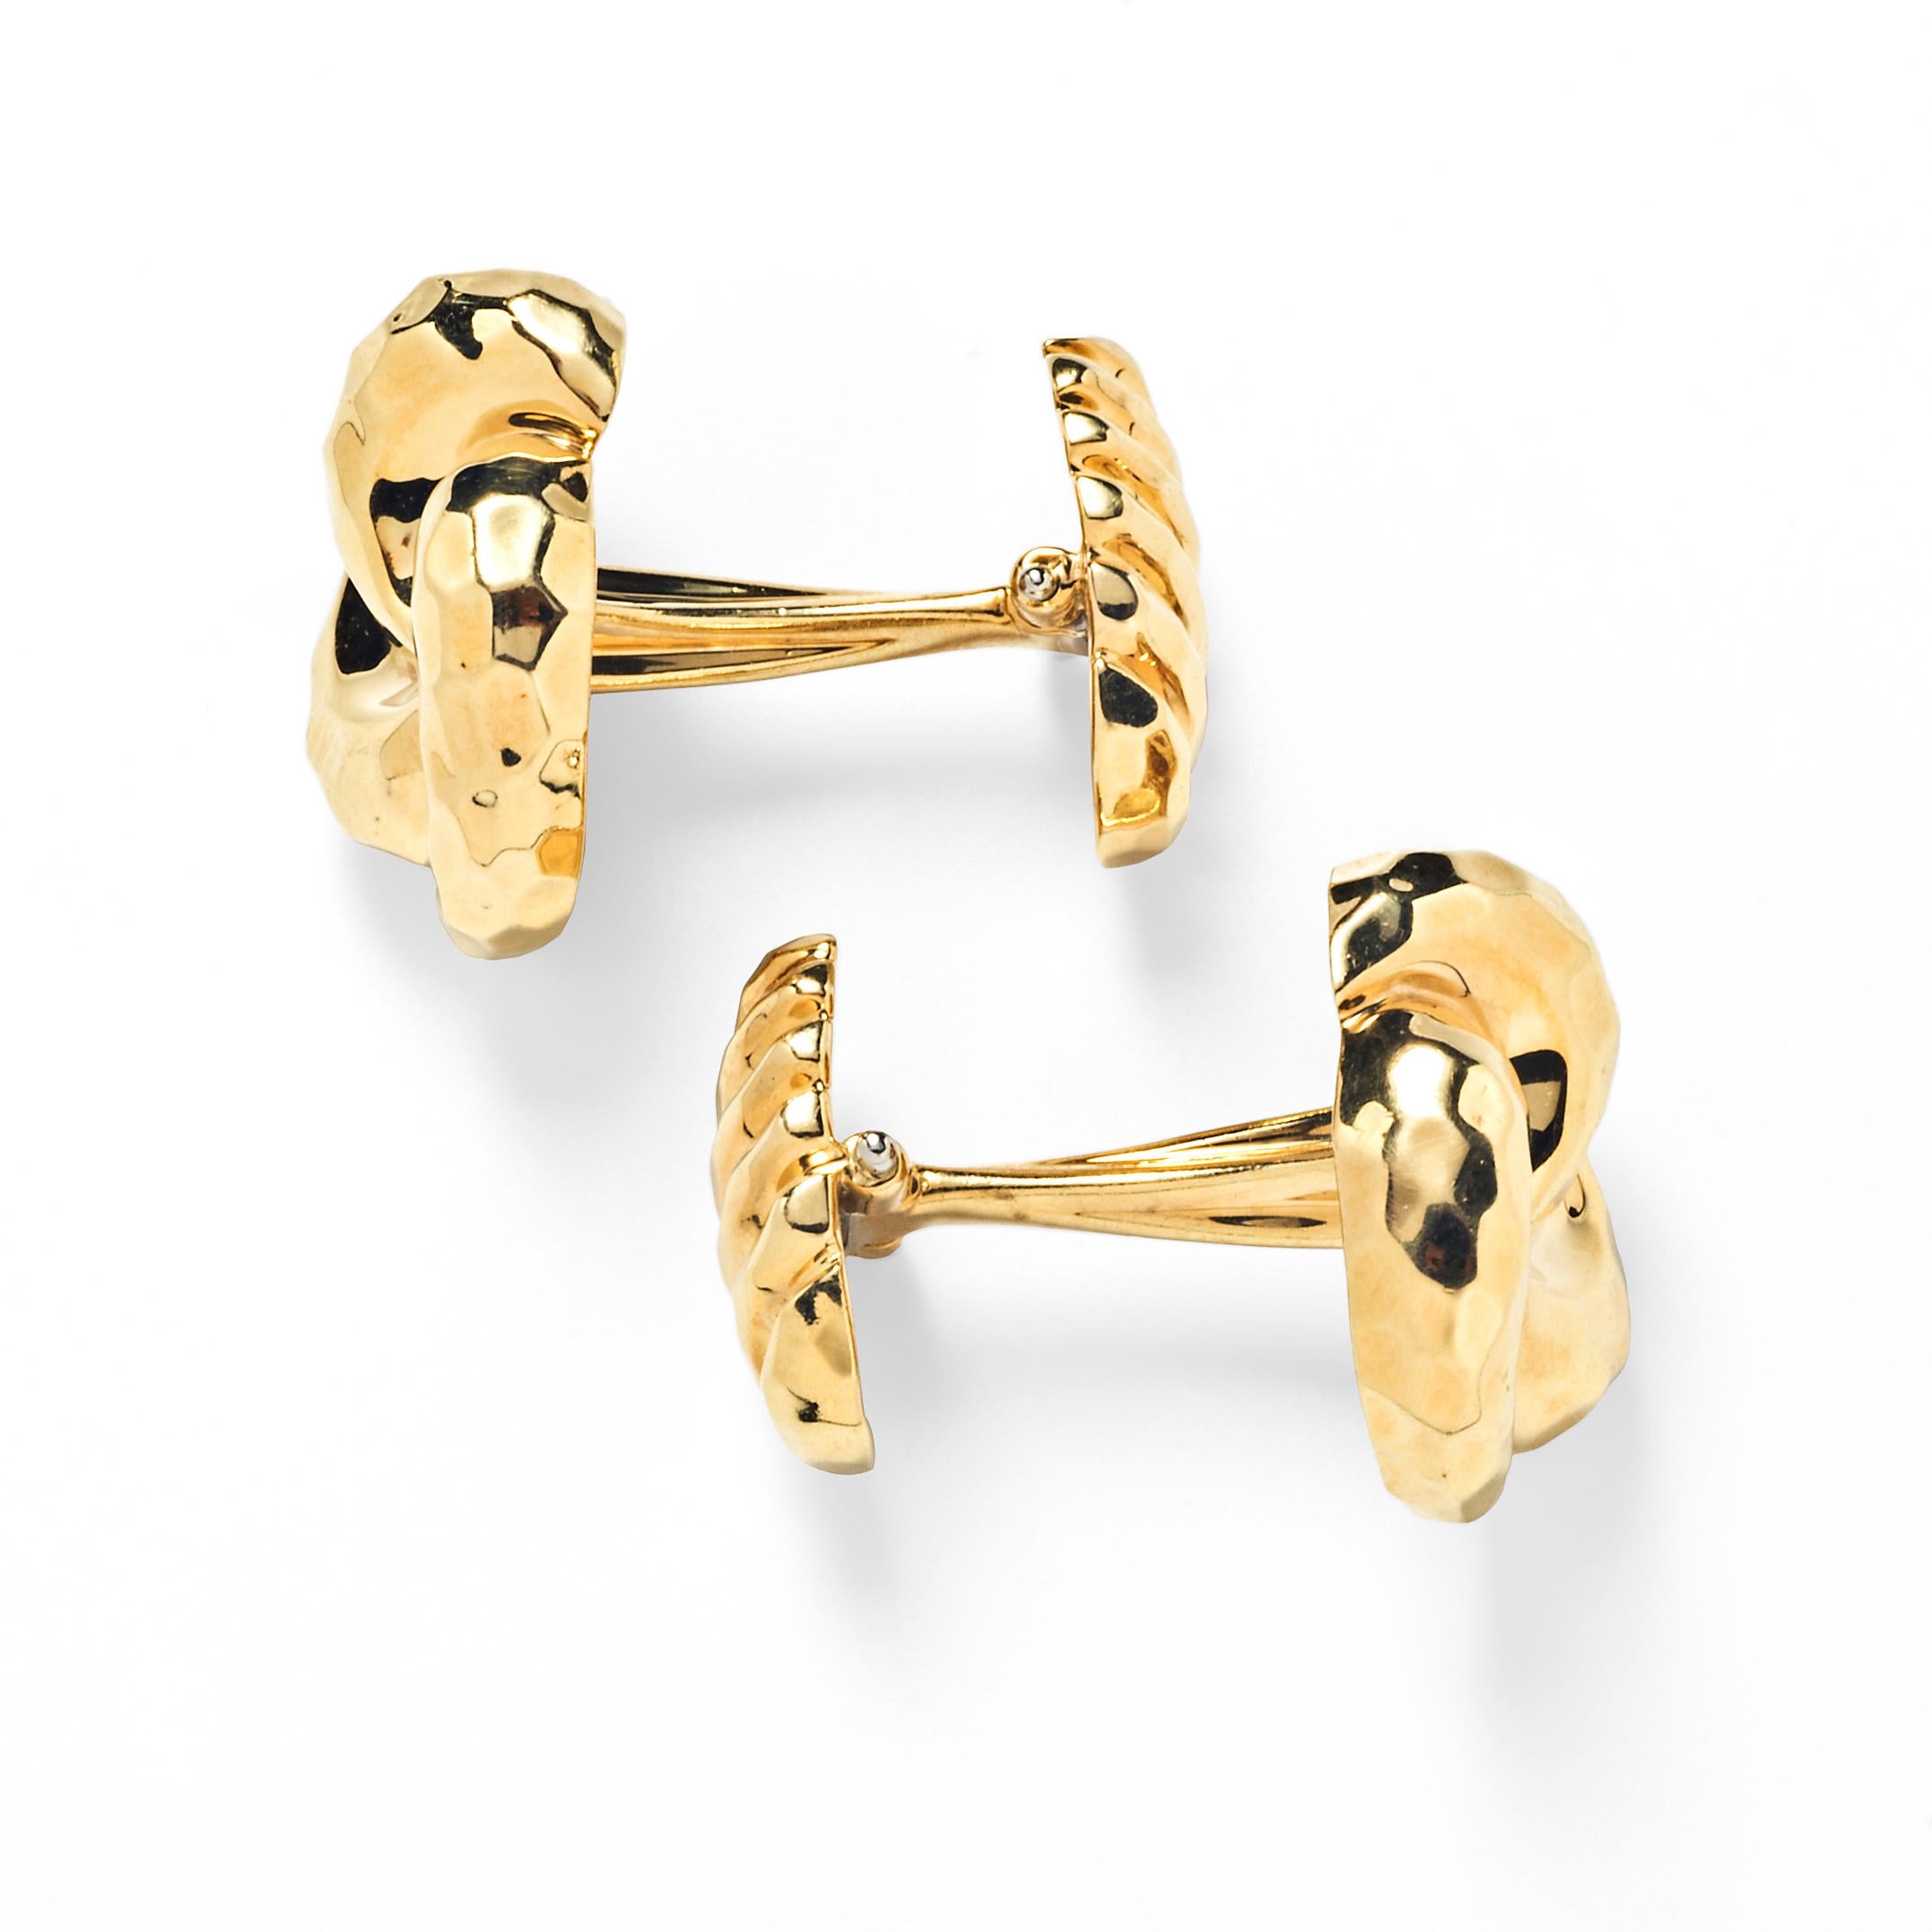 Dieses Paar Manschettenknöpfe von Dunay aus 18-karätigem Gold zeichnet sich durch wirbelnde, handgehämmerte Knoten aus, die mit geriffelten goldenen Walrückseiten abgeschlossen sind.

18K Gelbgold
Unterzeichnet Dunay